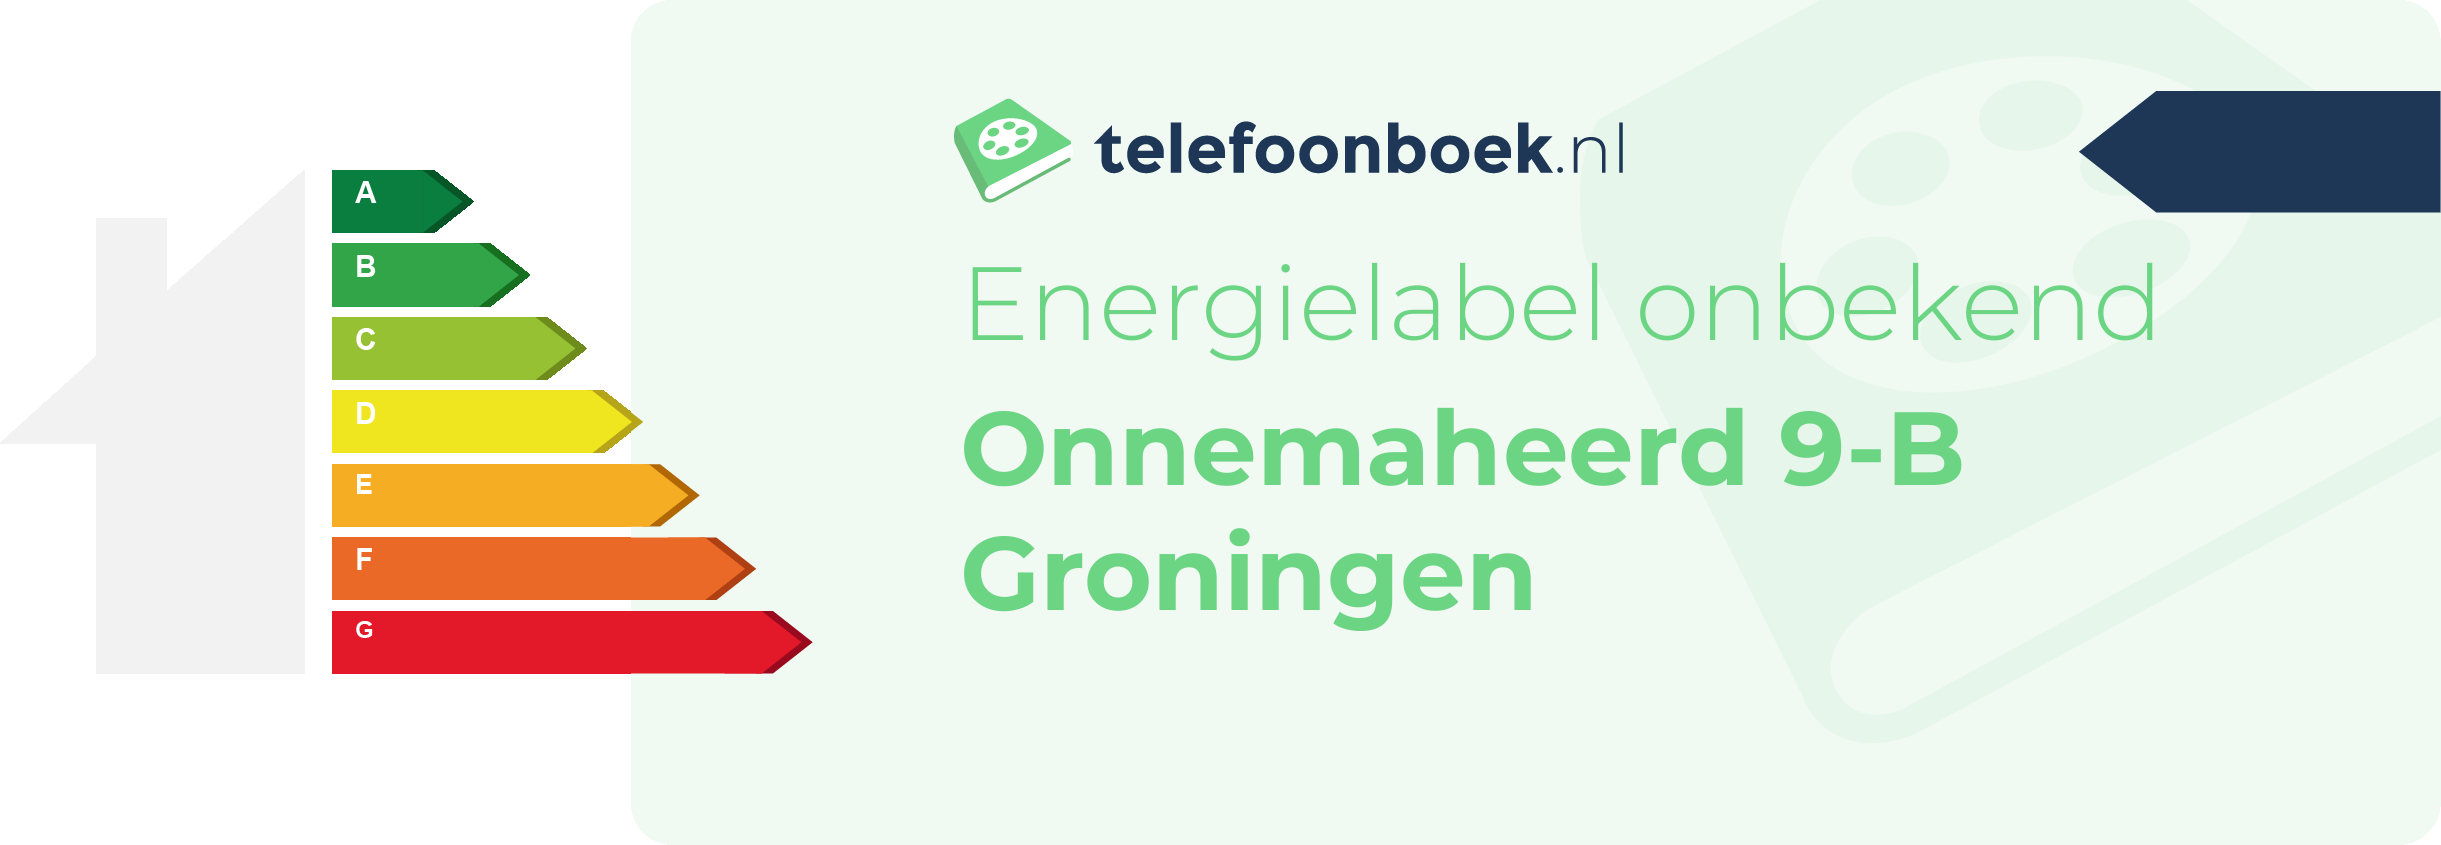 Energielabel Onnemaheerd 9-B Groningen